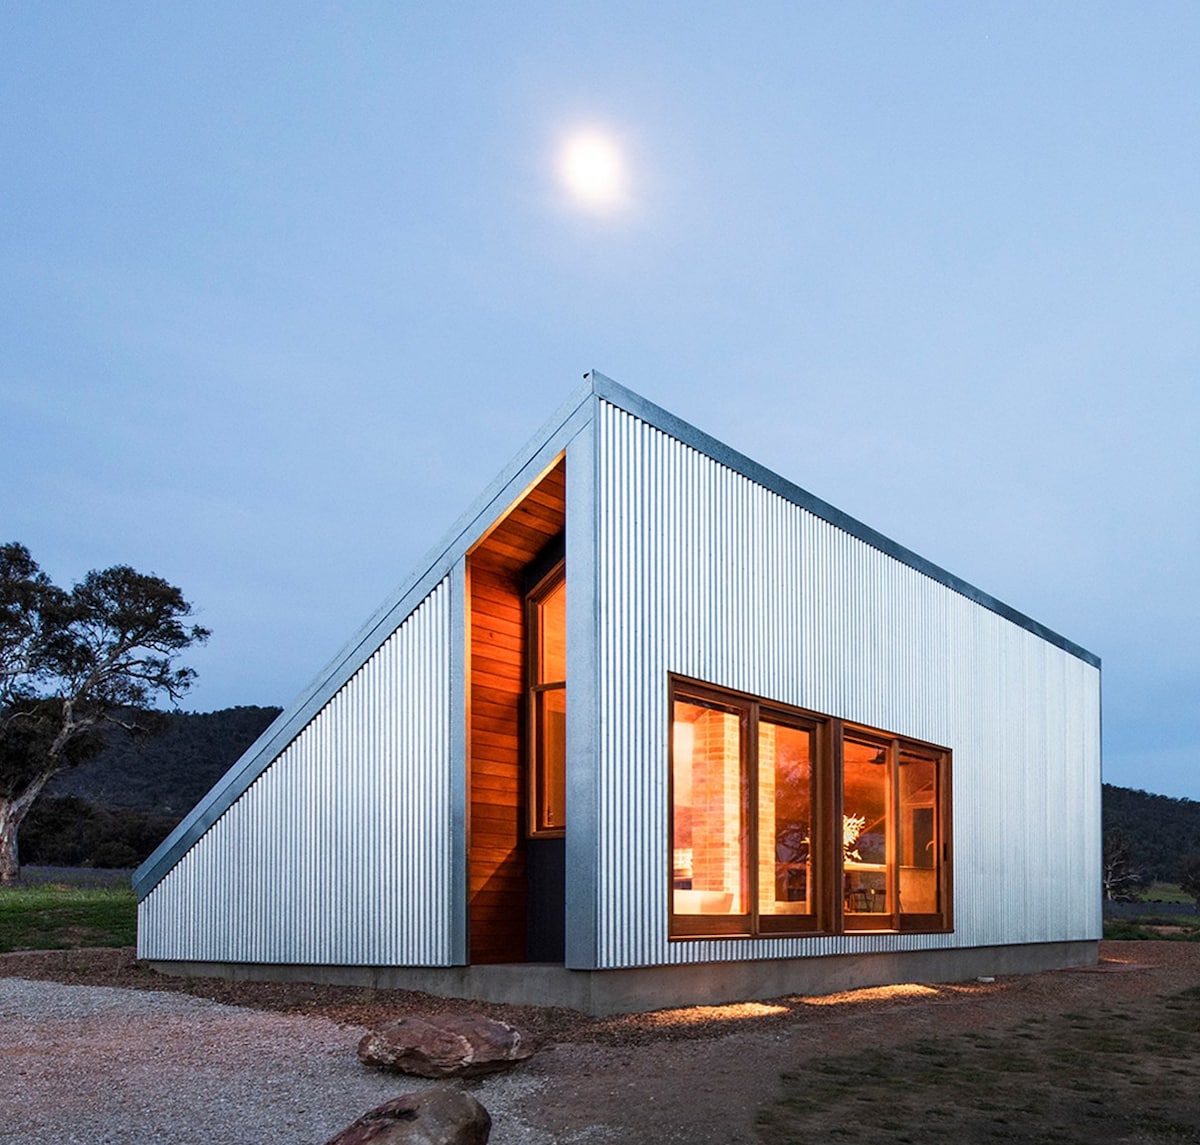 Una casa de Cameron Anderson Architects se encuentra bajo la luna llena. Las ventanas y las puertas grandes están abiertas y muestran un interior cálido de madera, mientras los bordes de metal corrugado de las paredes exteriores reflejan la luz de la luna.